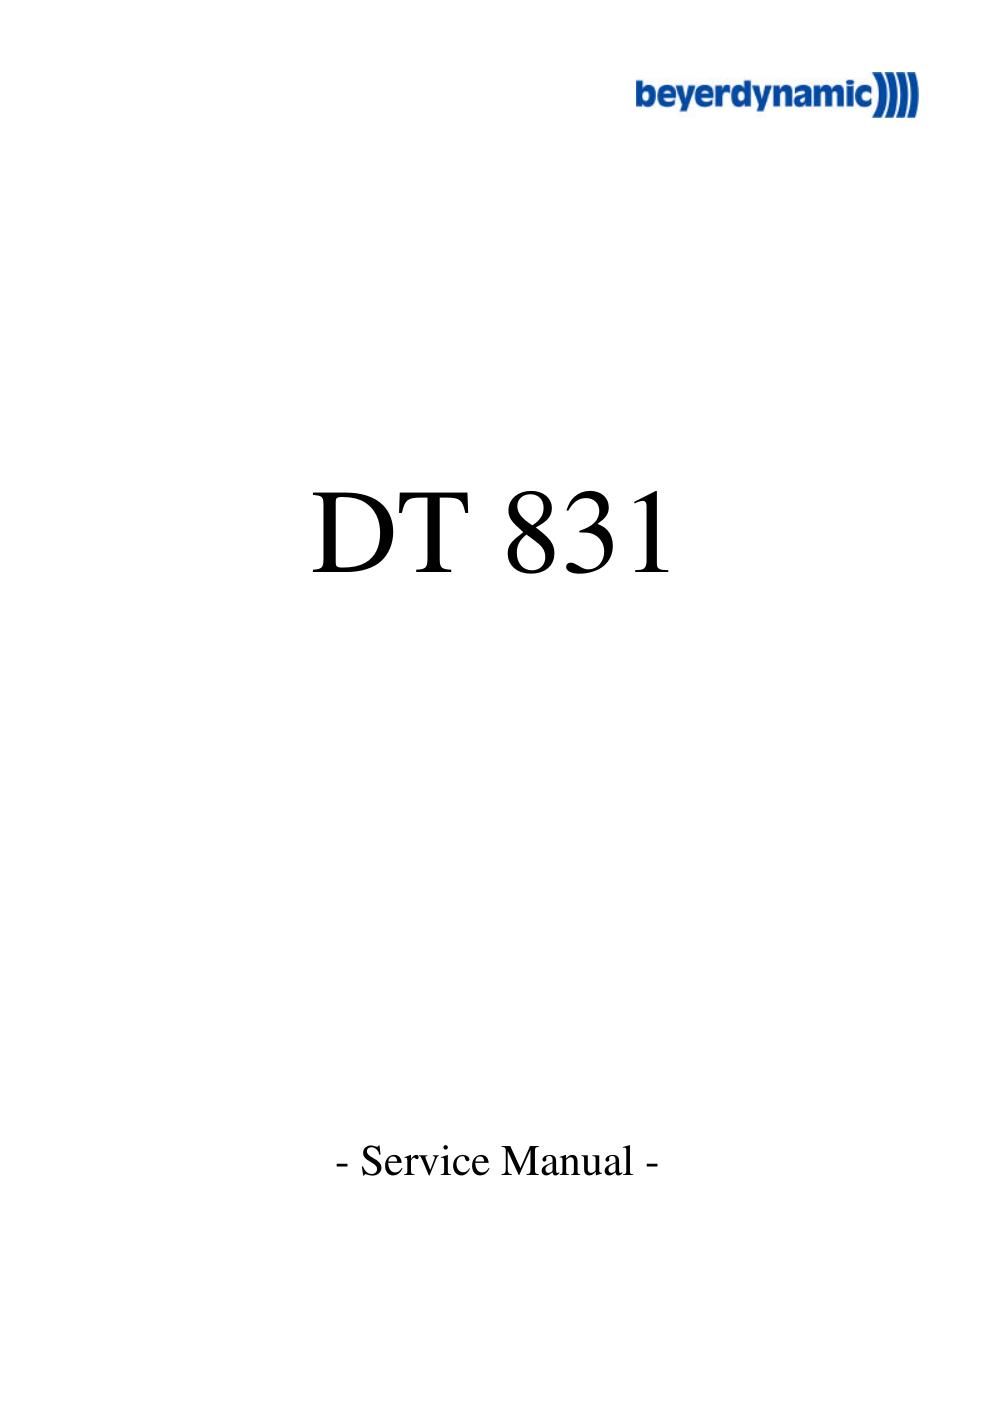 beyerdynamic dt 831 service manual